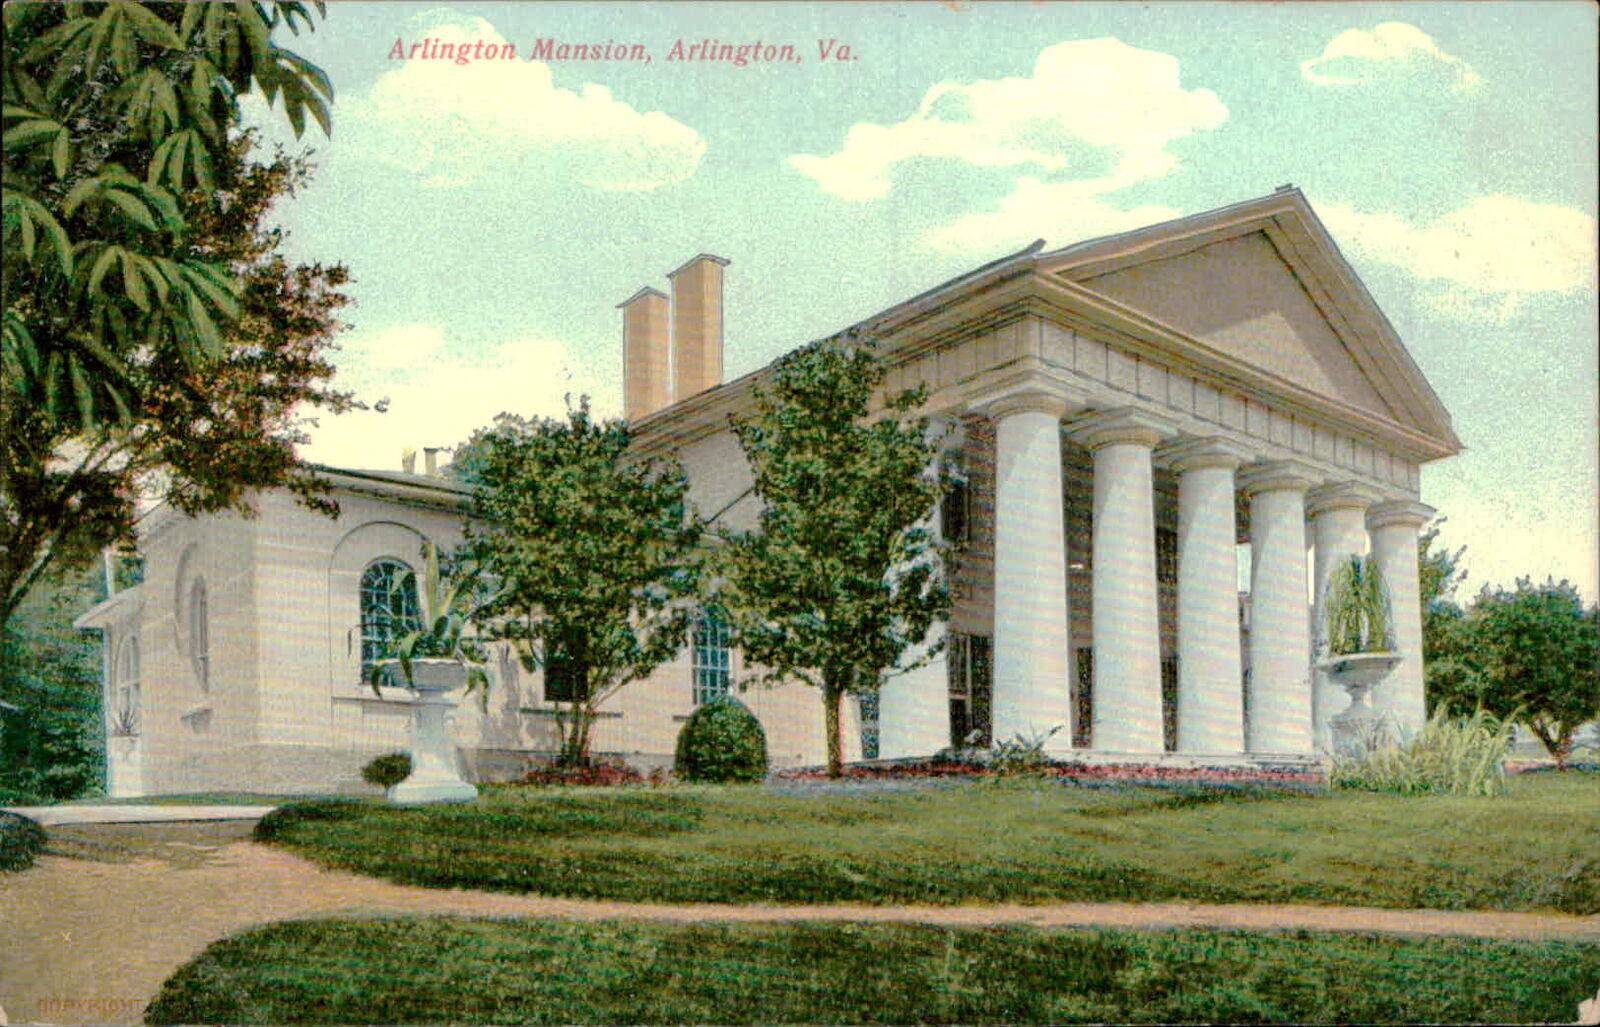 Postcard: COPYRIGHT Arlington Mansion, Arlington, Va.